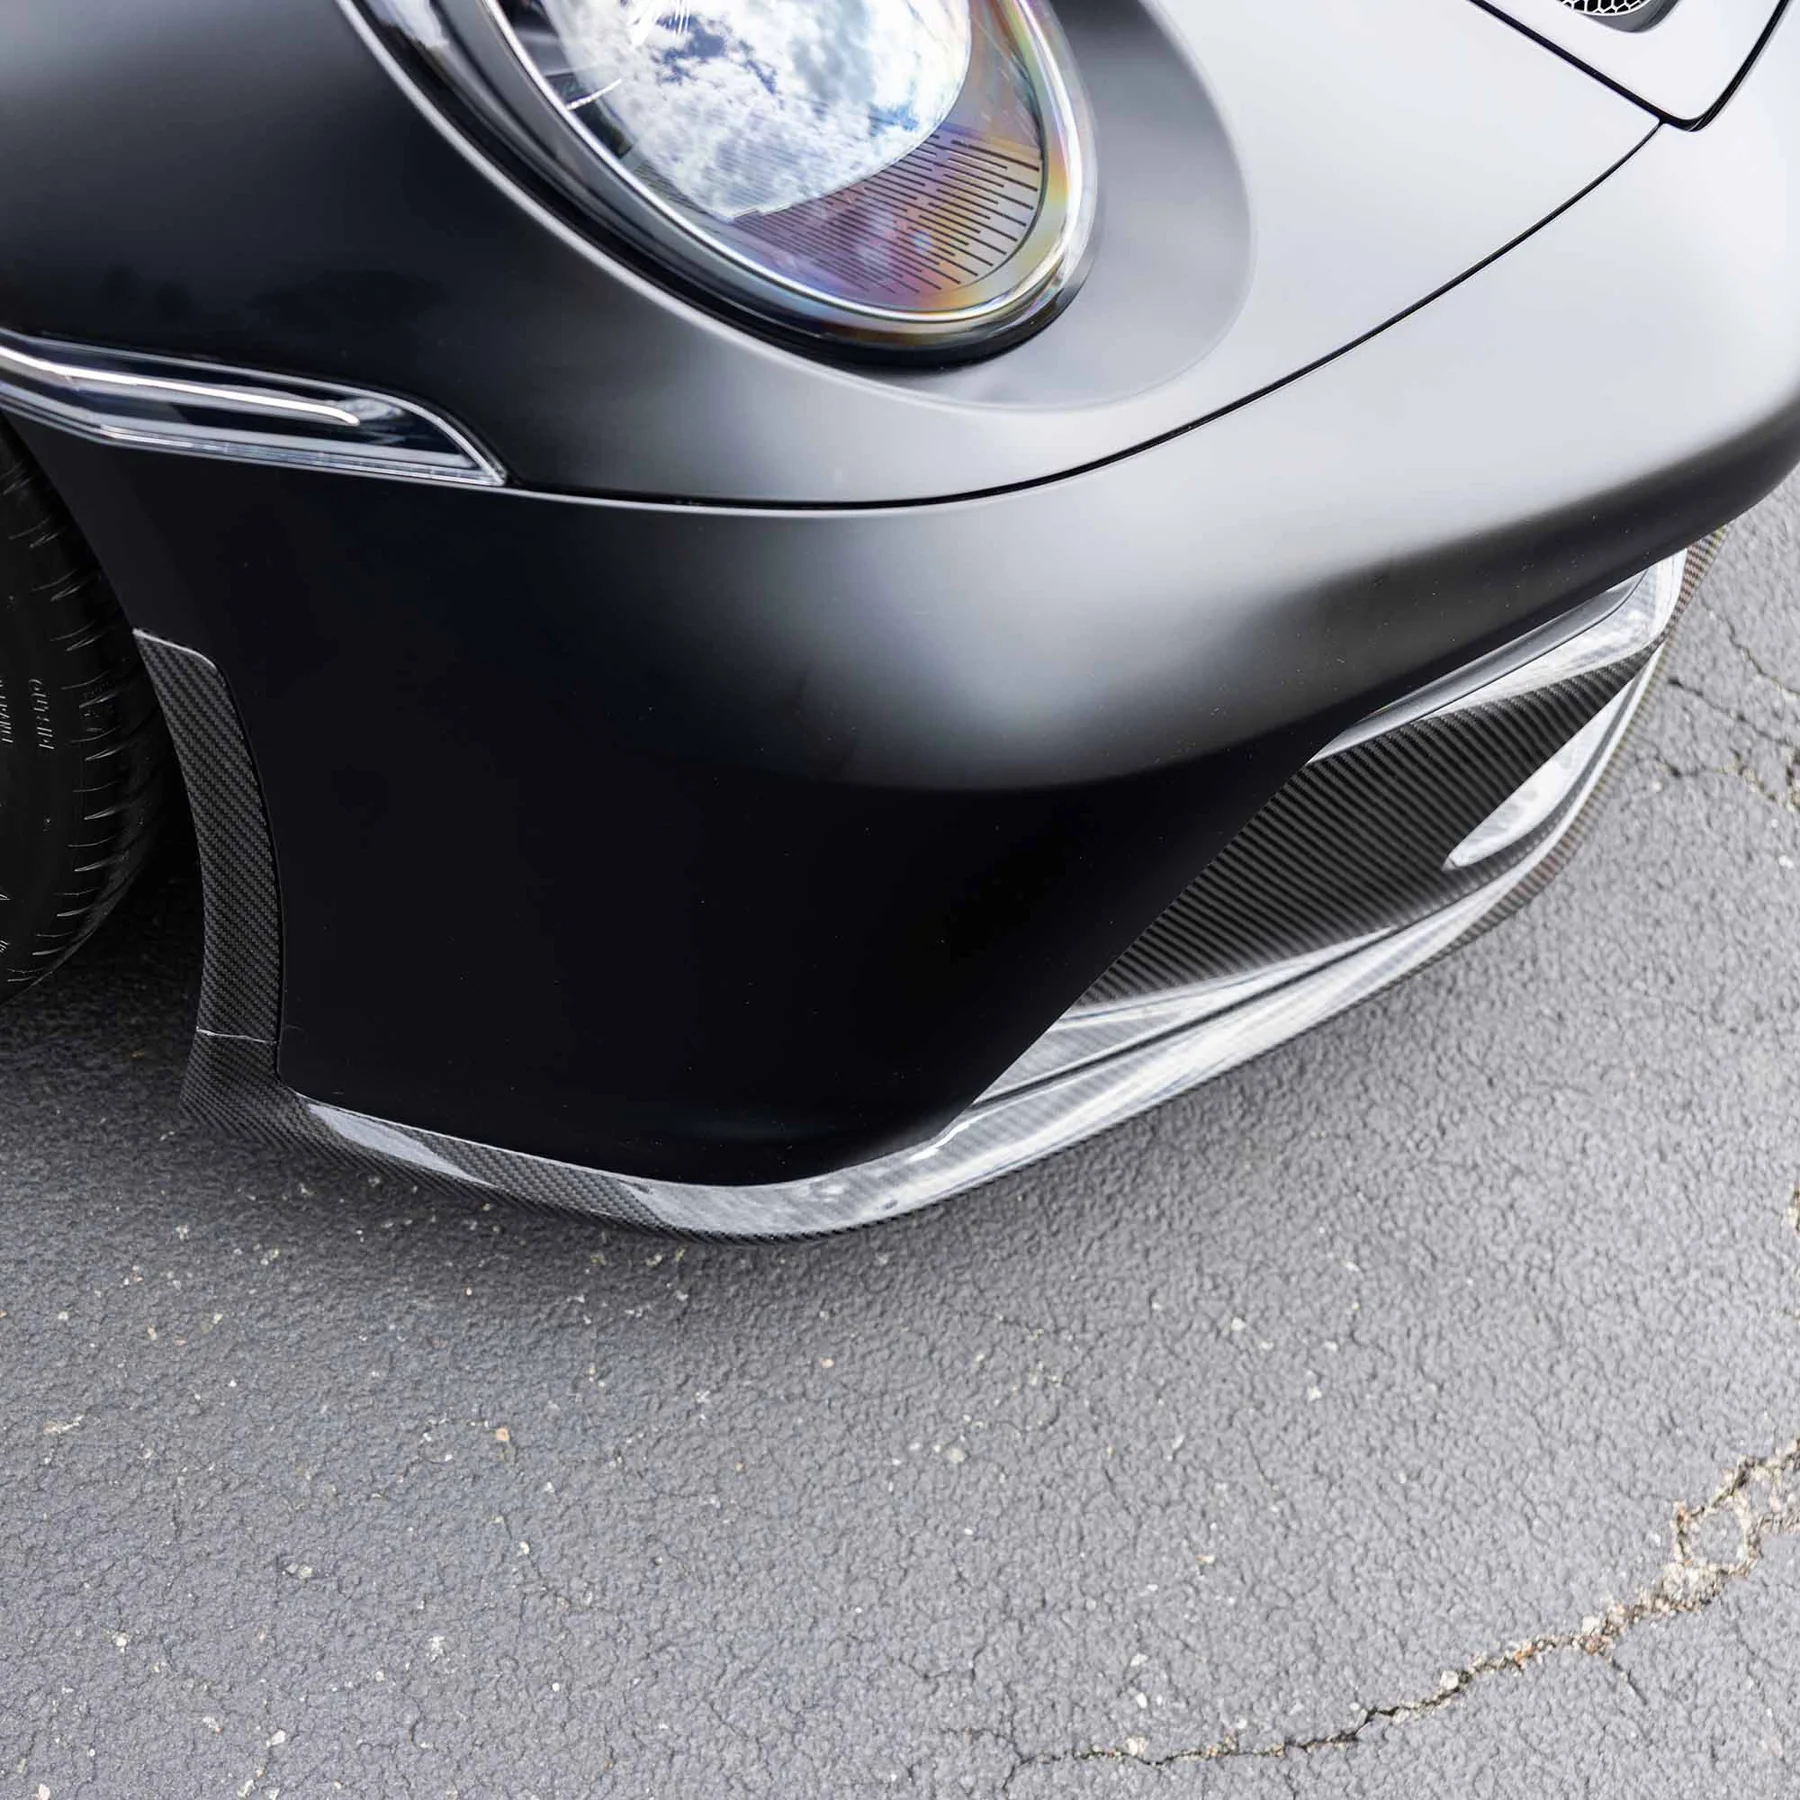 RACING SPORT CONCEPTS - Carbon Frontschürzeneinsatz für Porsche 992 GT3